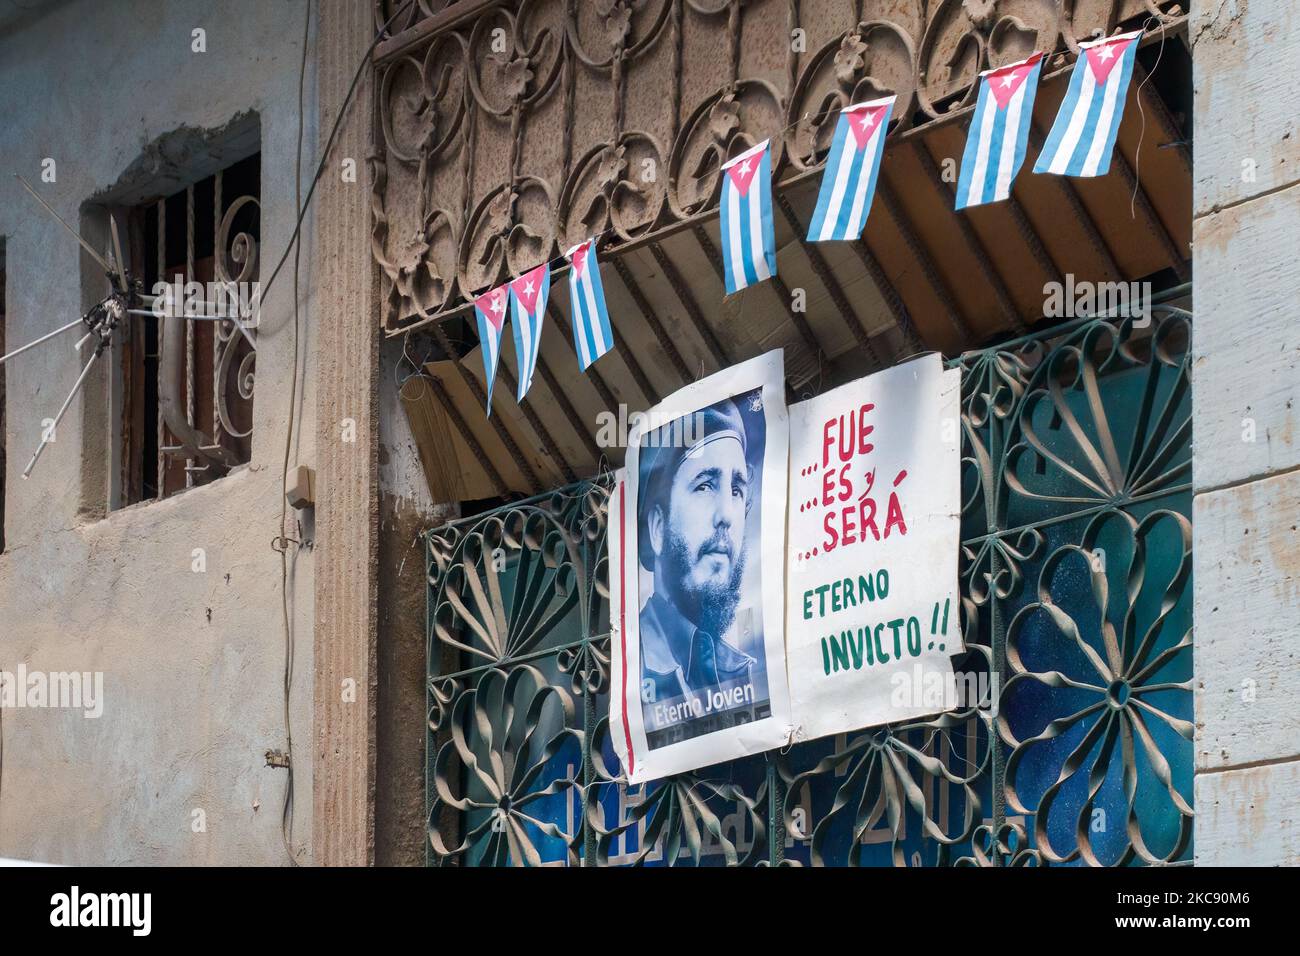 Una foto de Fidel Castro y pequeñas banderas cubanas están en un edificio envejecido. Un texto dice: 'Era, es, y será eterno, Invictus.' Foto de stock